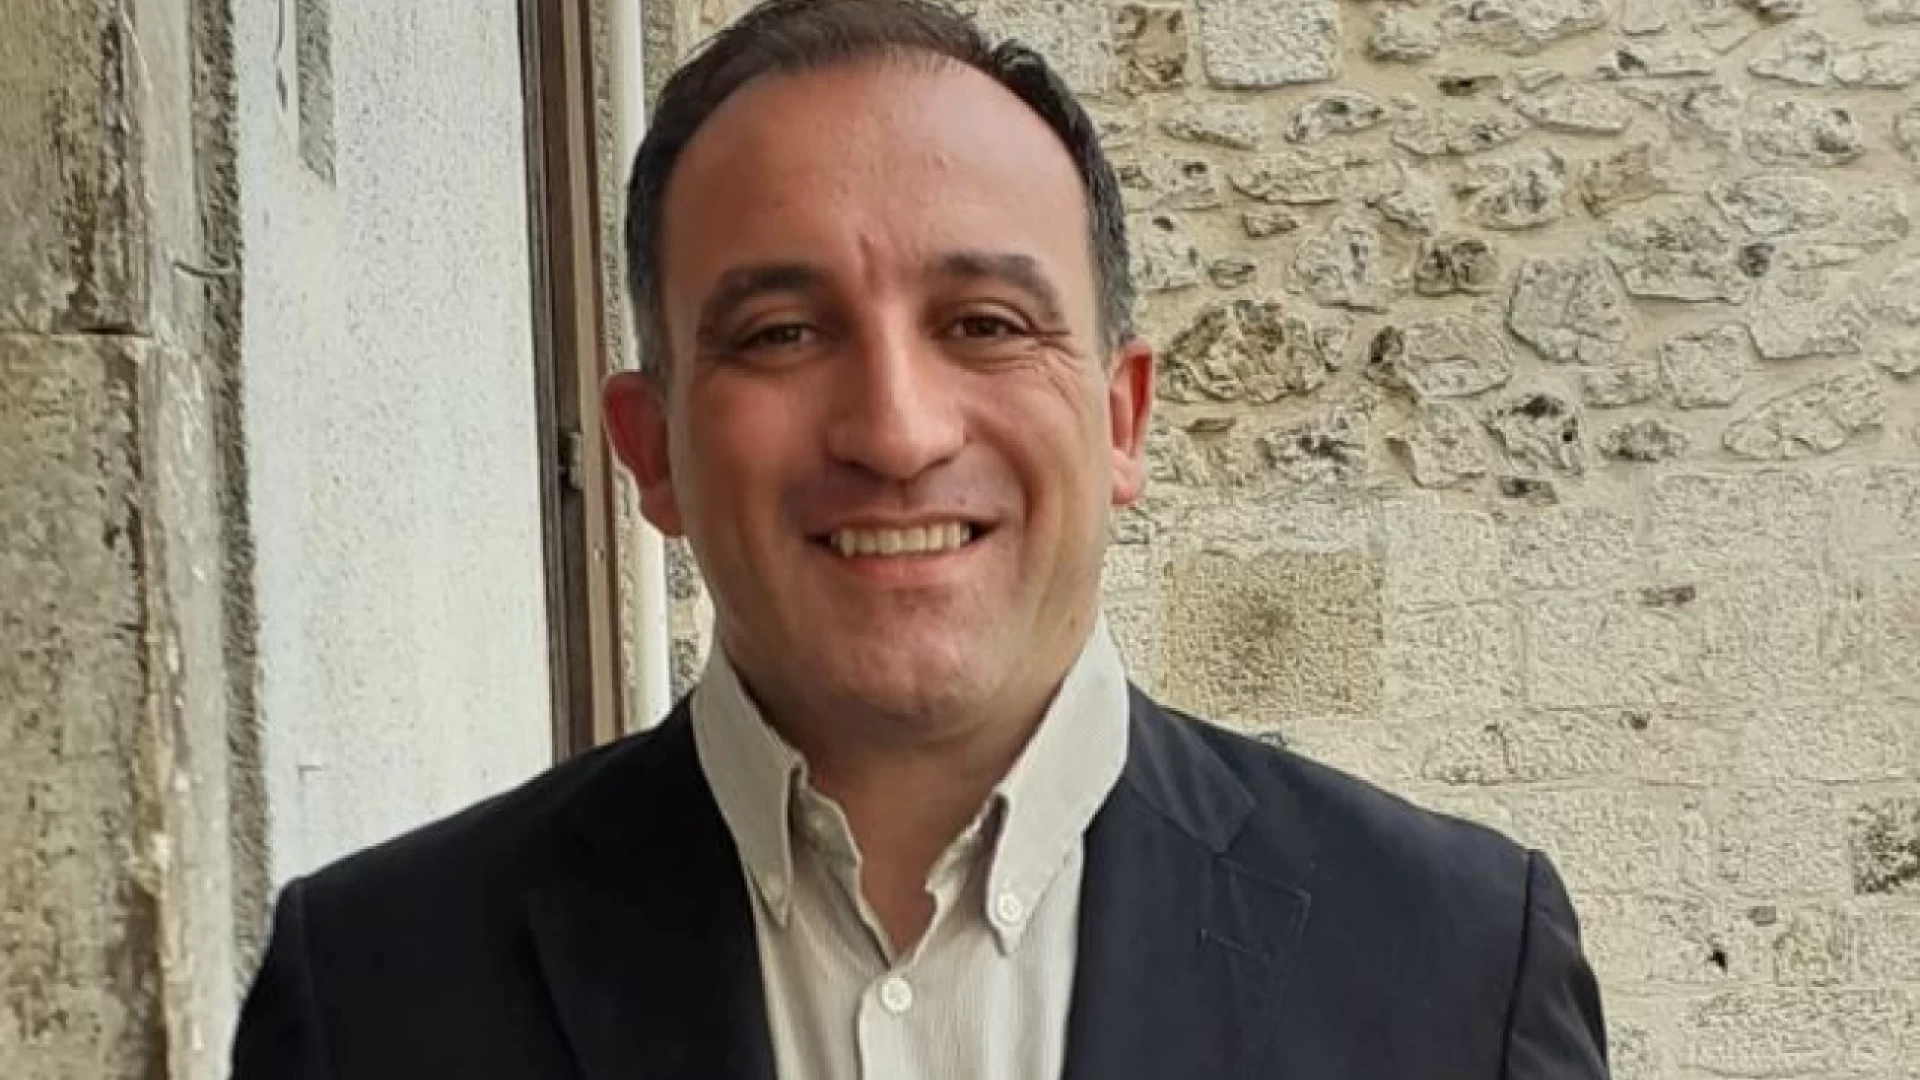 Castel Di Sangro: Stefano D'Amico ringrazia gli elettori. "Il mio risultato è frutto dei temi veri trattati in Campagna elettorale". Guarda l'intervista